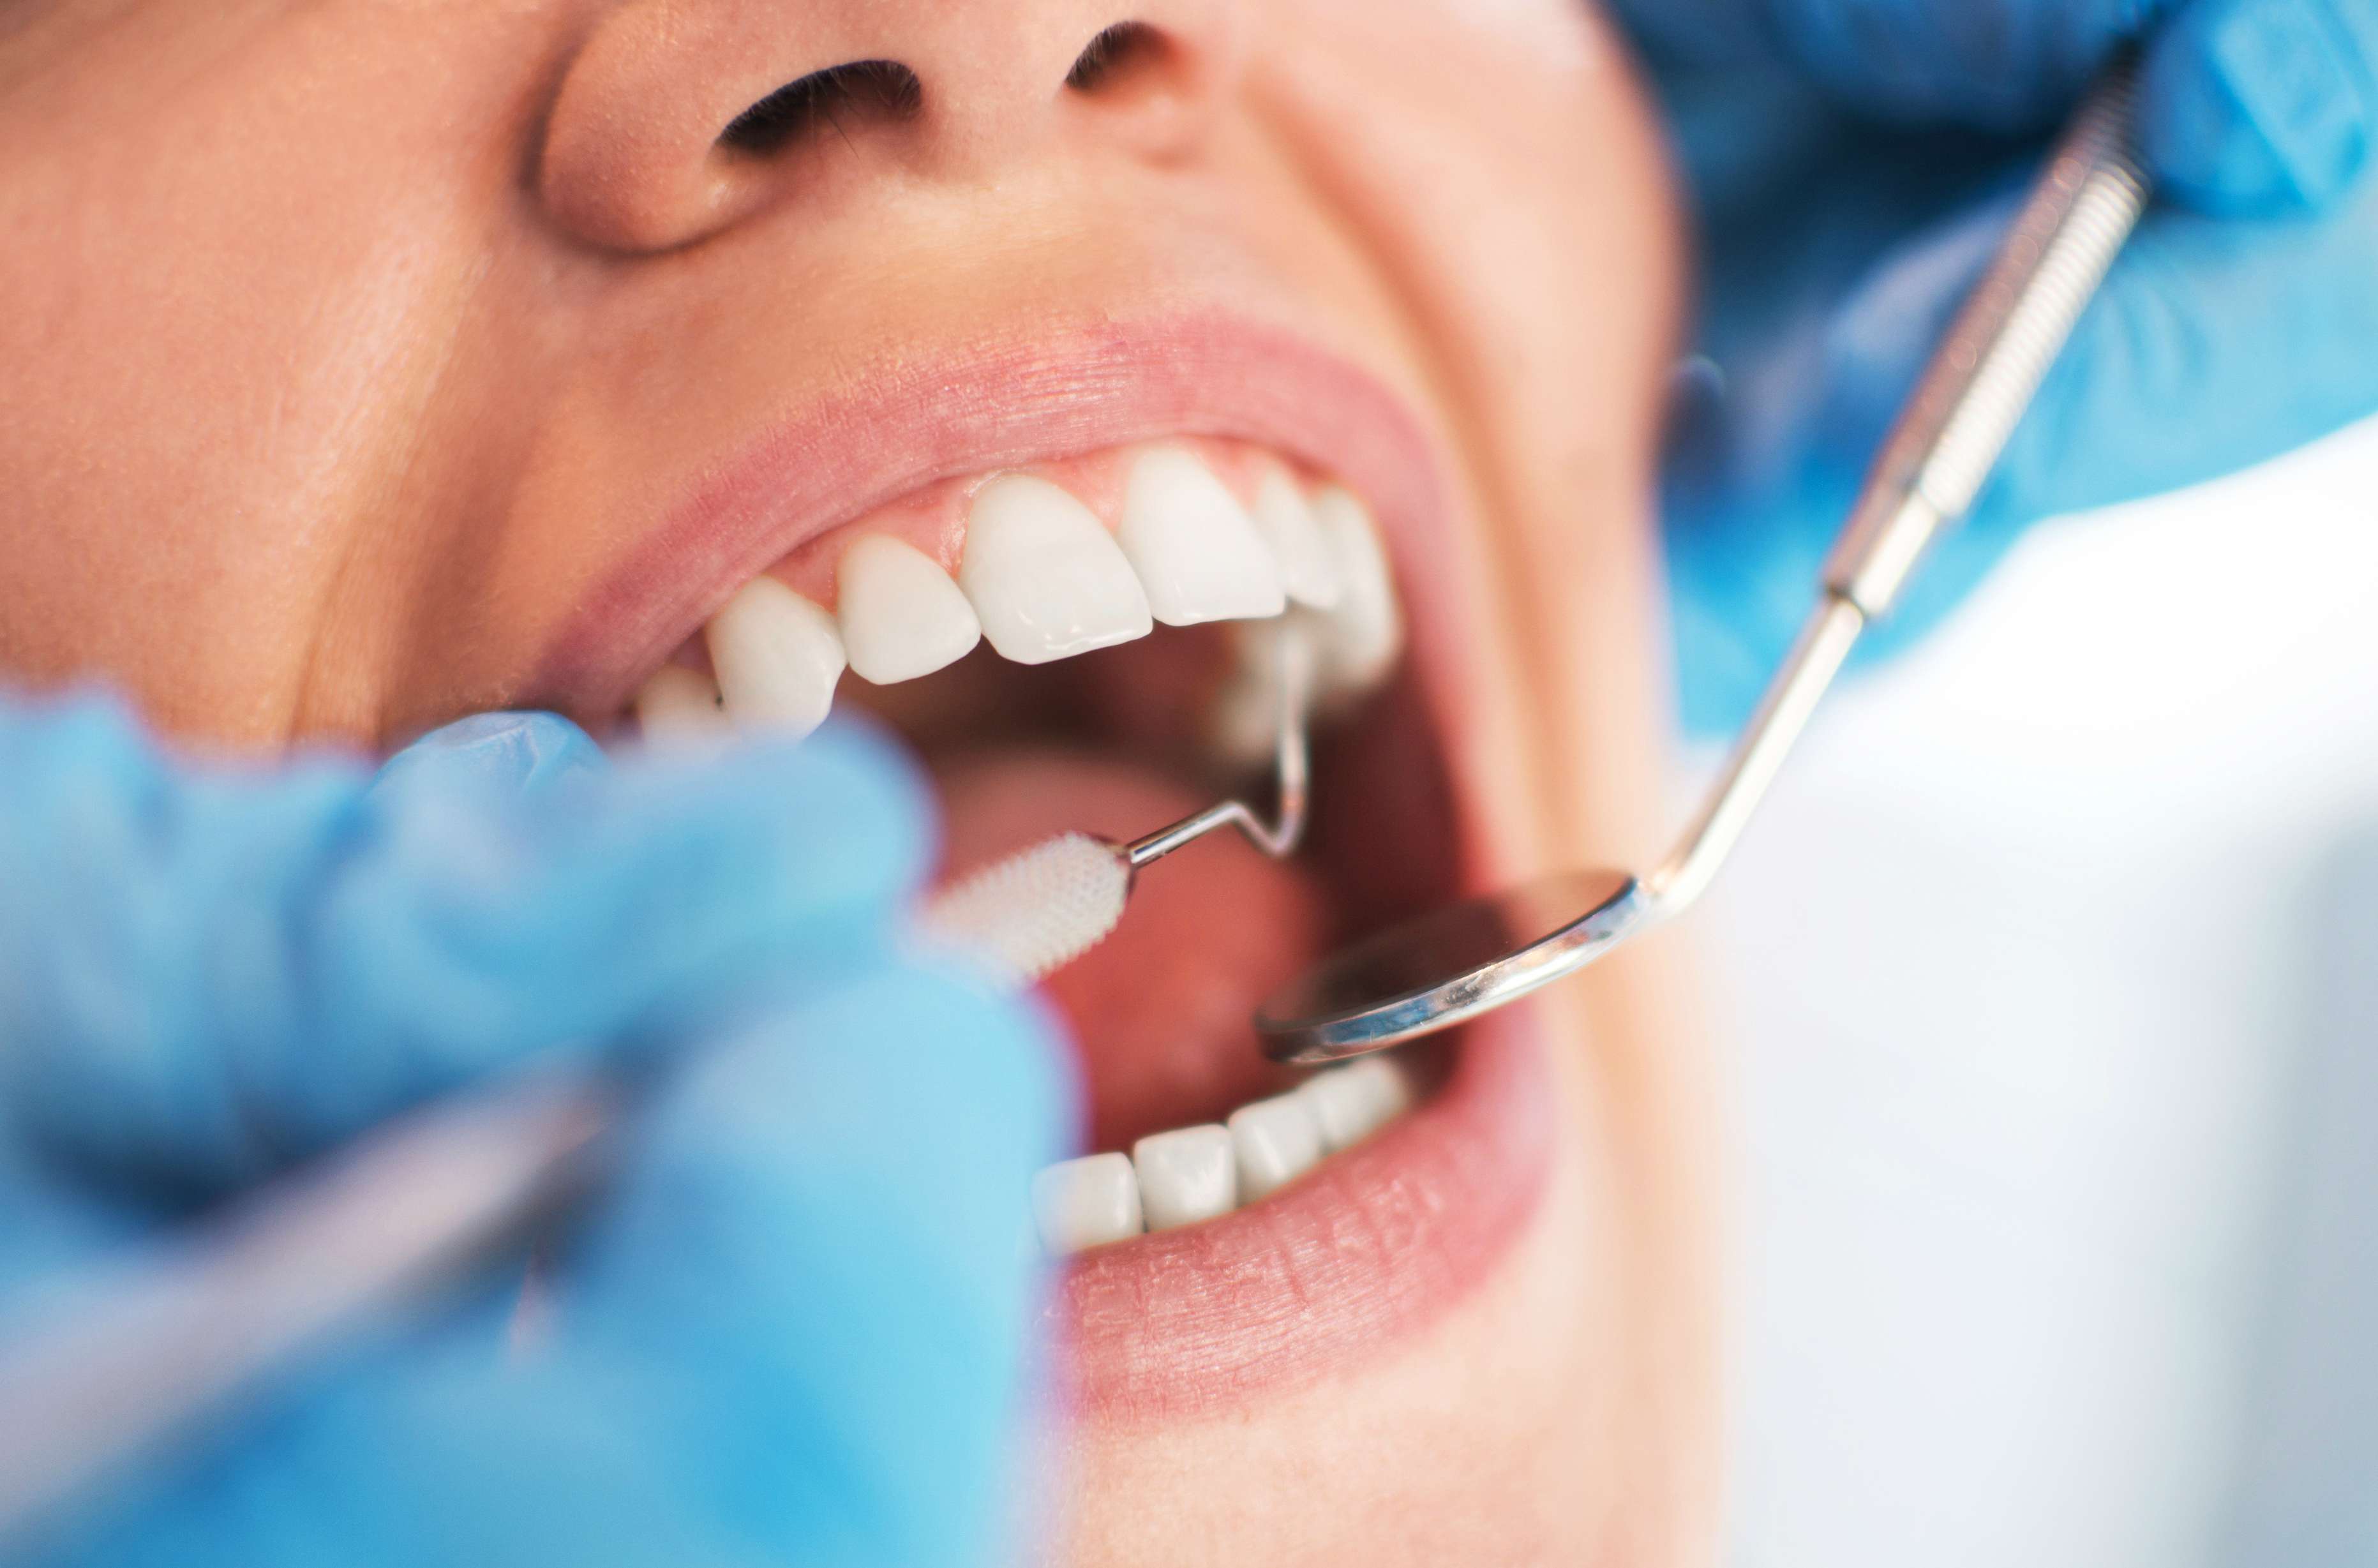 Entidades nacionais da odontologia debatem urgências da categoria